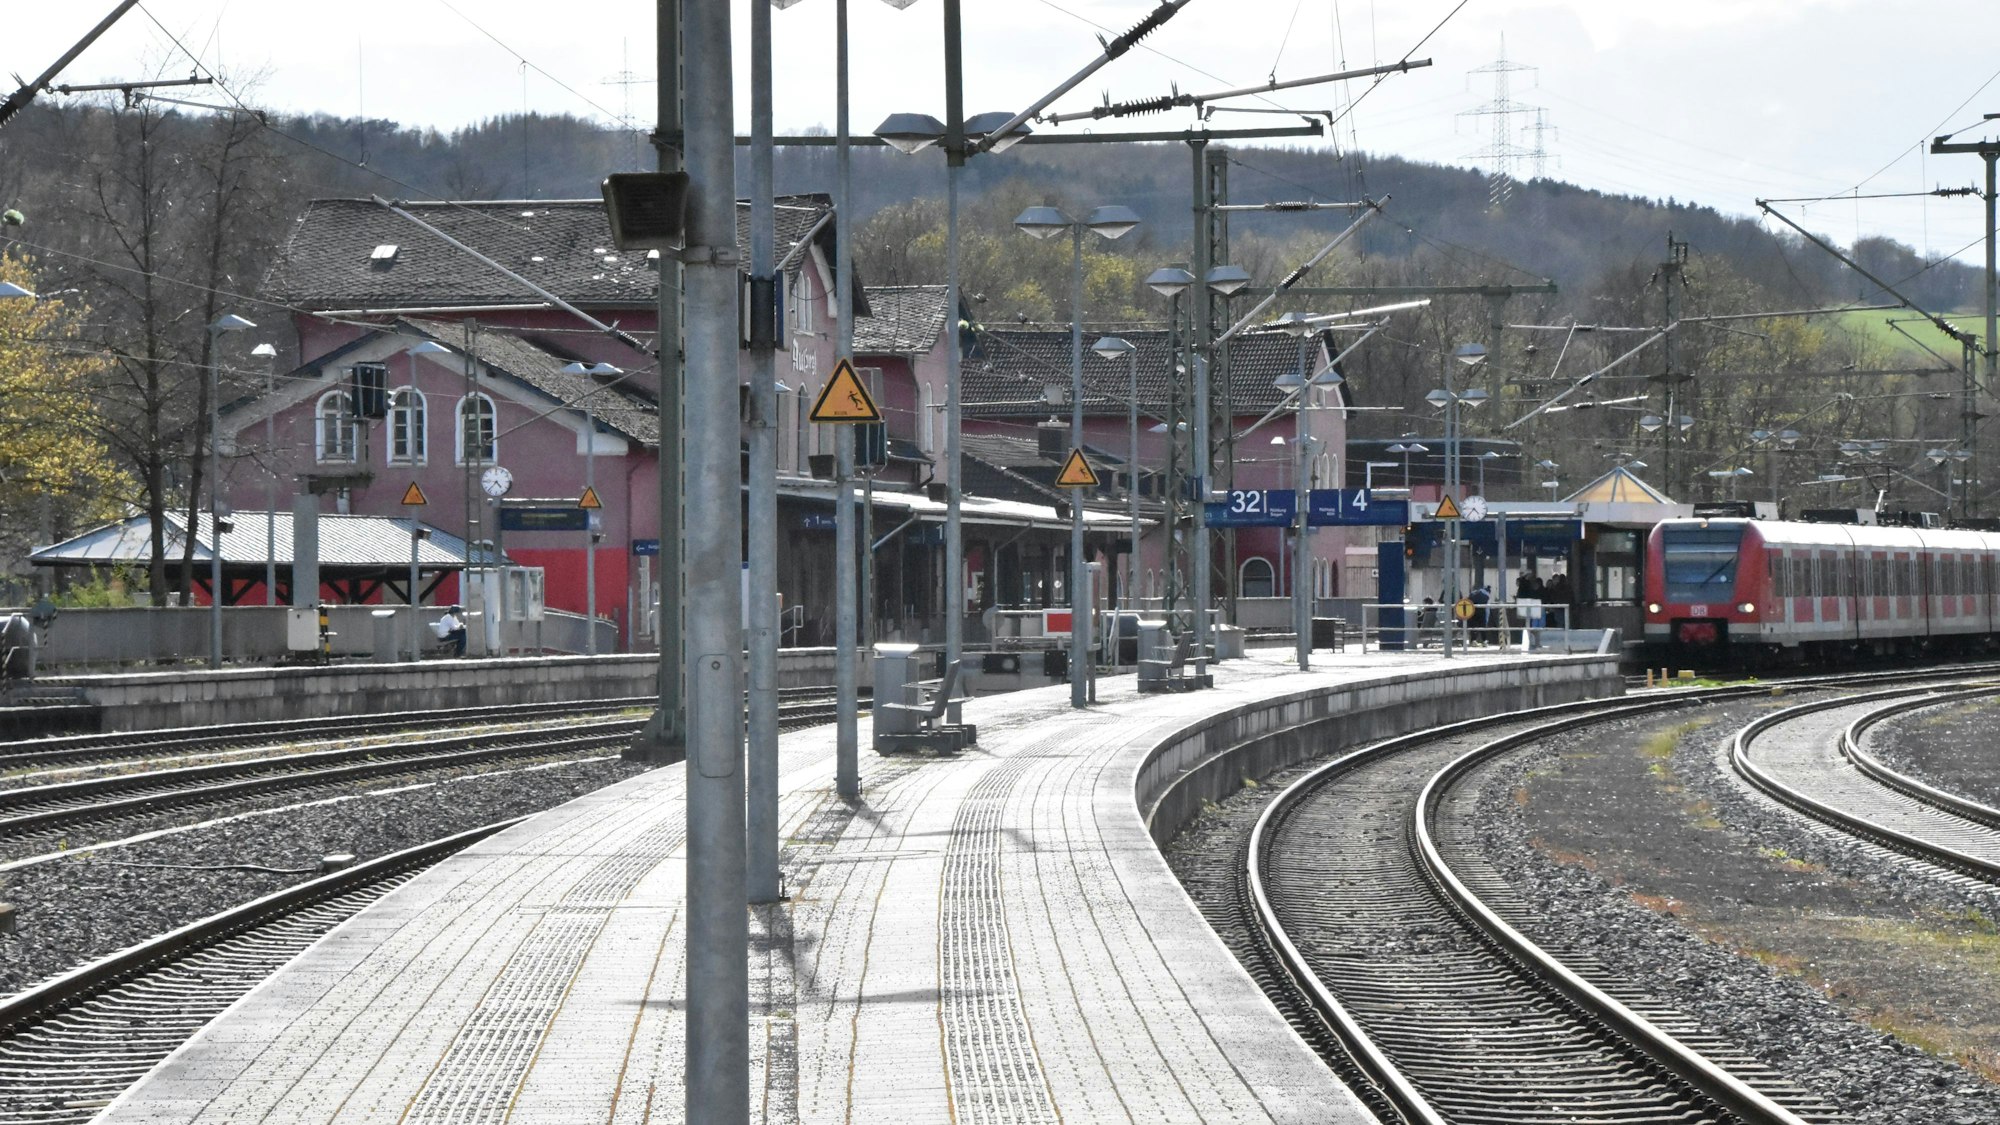 Ein Zug fährt in den Bahnhof ein, dessen rötliches Gebäude hinter gebogenen Bahnsteigen liegt. Gleise und Bahnsteige sind sauber.